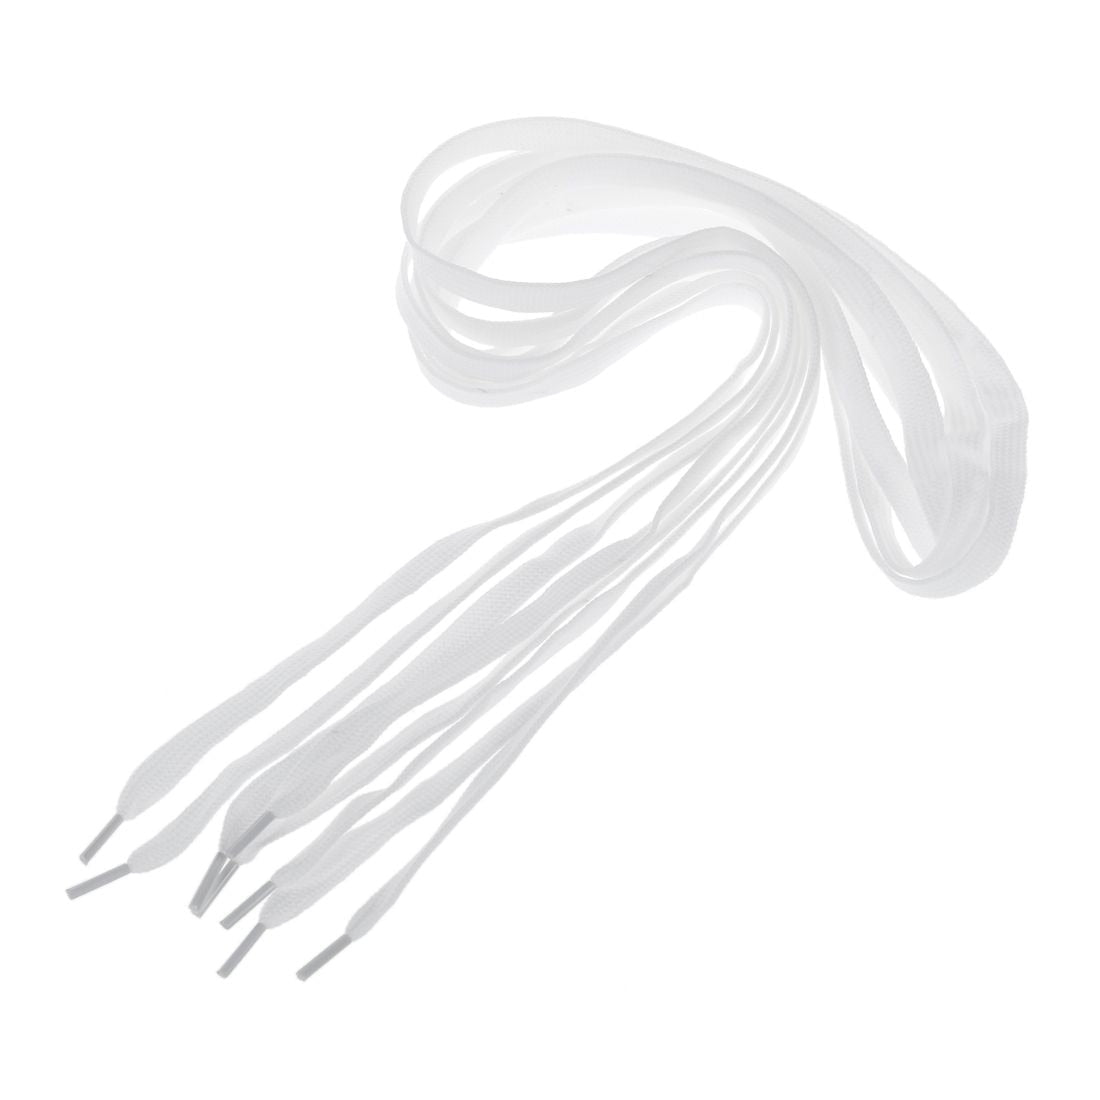 2 Pairs 120cm Cotton Blends Nylon White Shoelaces for Sneaker Shoes hoelaces Flat Shoes Shoelaces - ebowsos